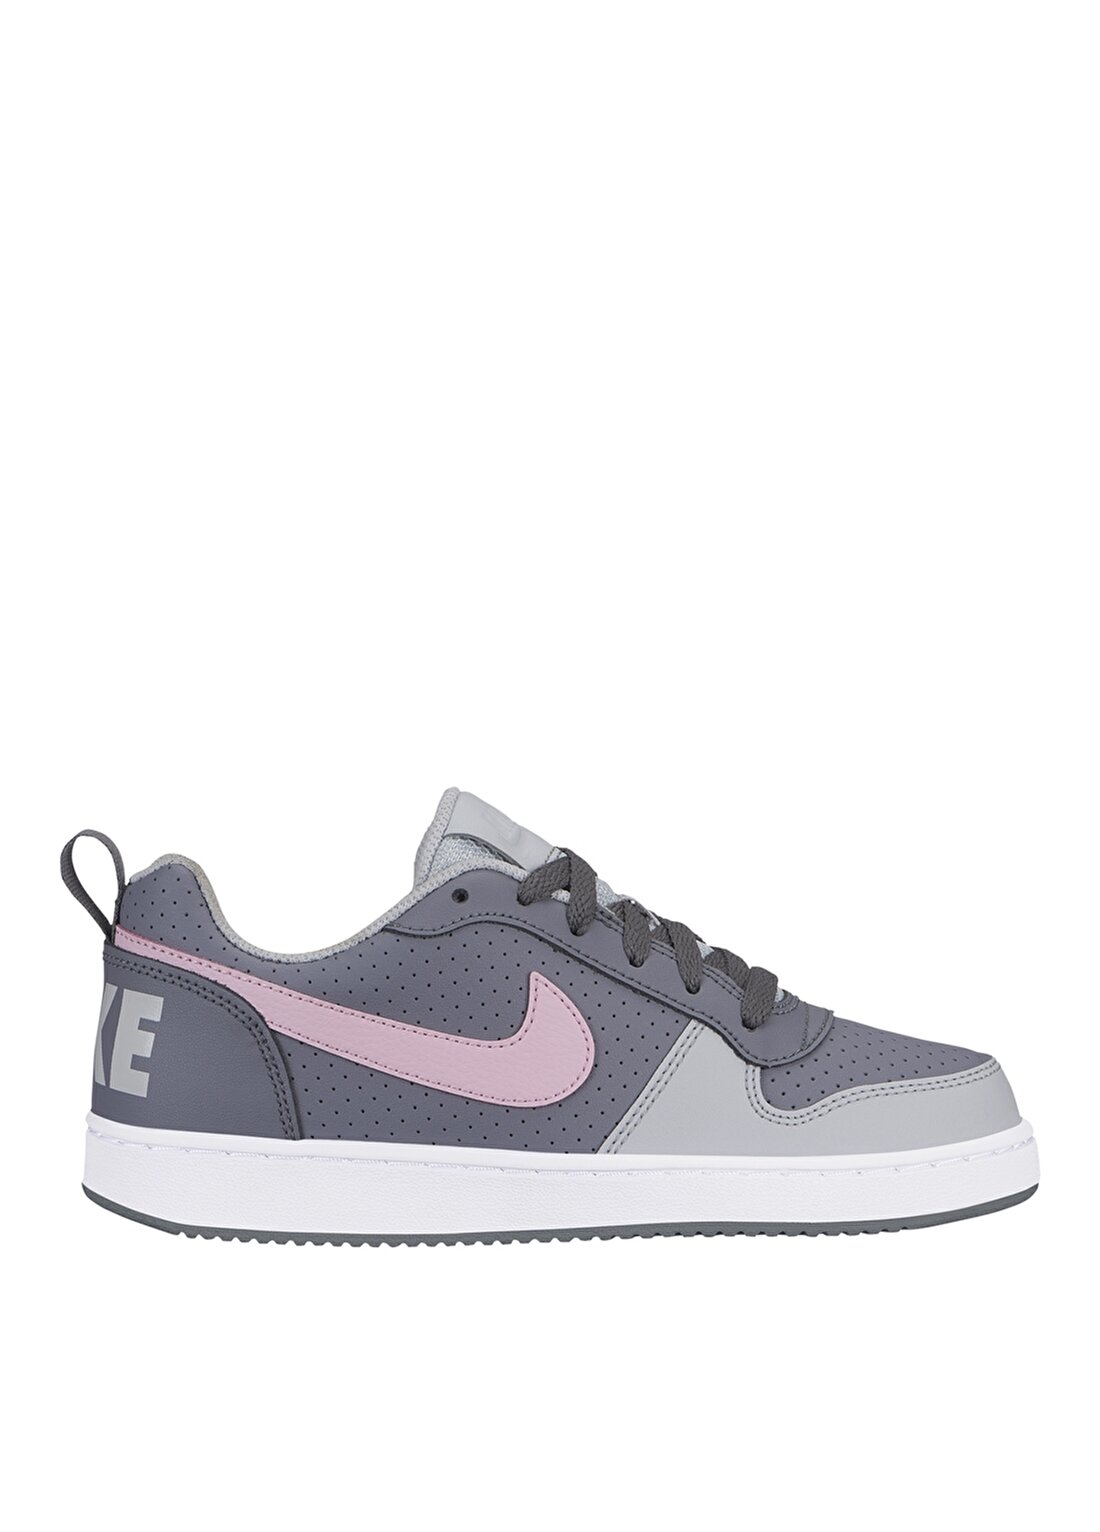 Nike Siyah - Gri - Gümüş Kız Çocuk Yürüyüş Ayakkabısı